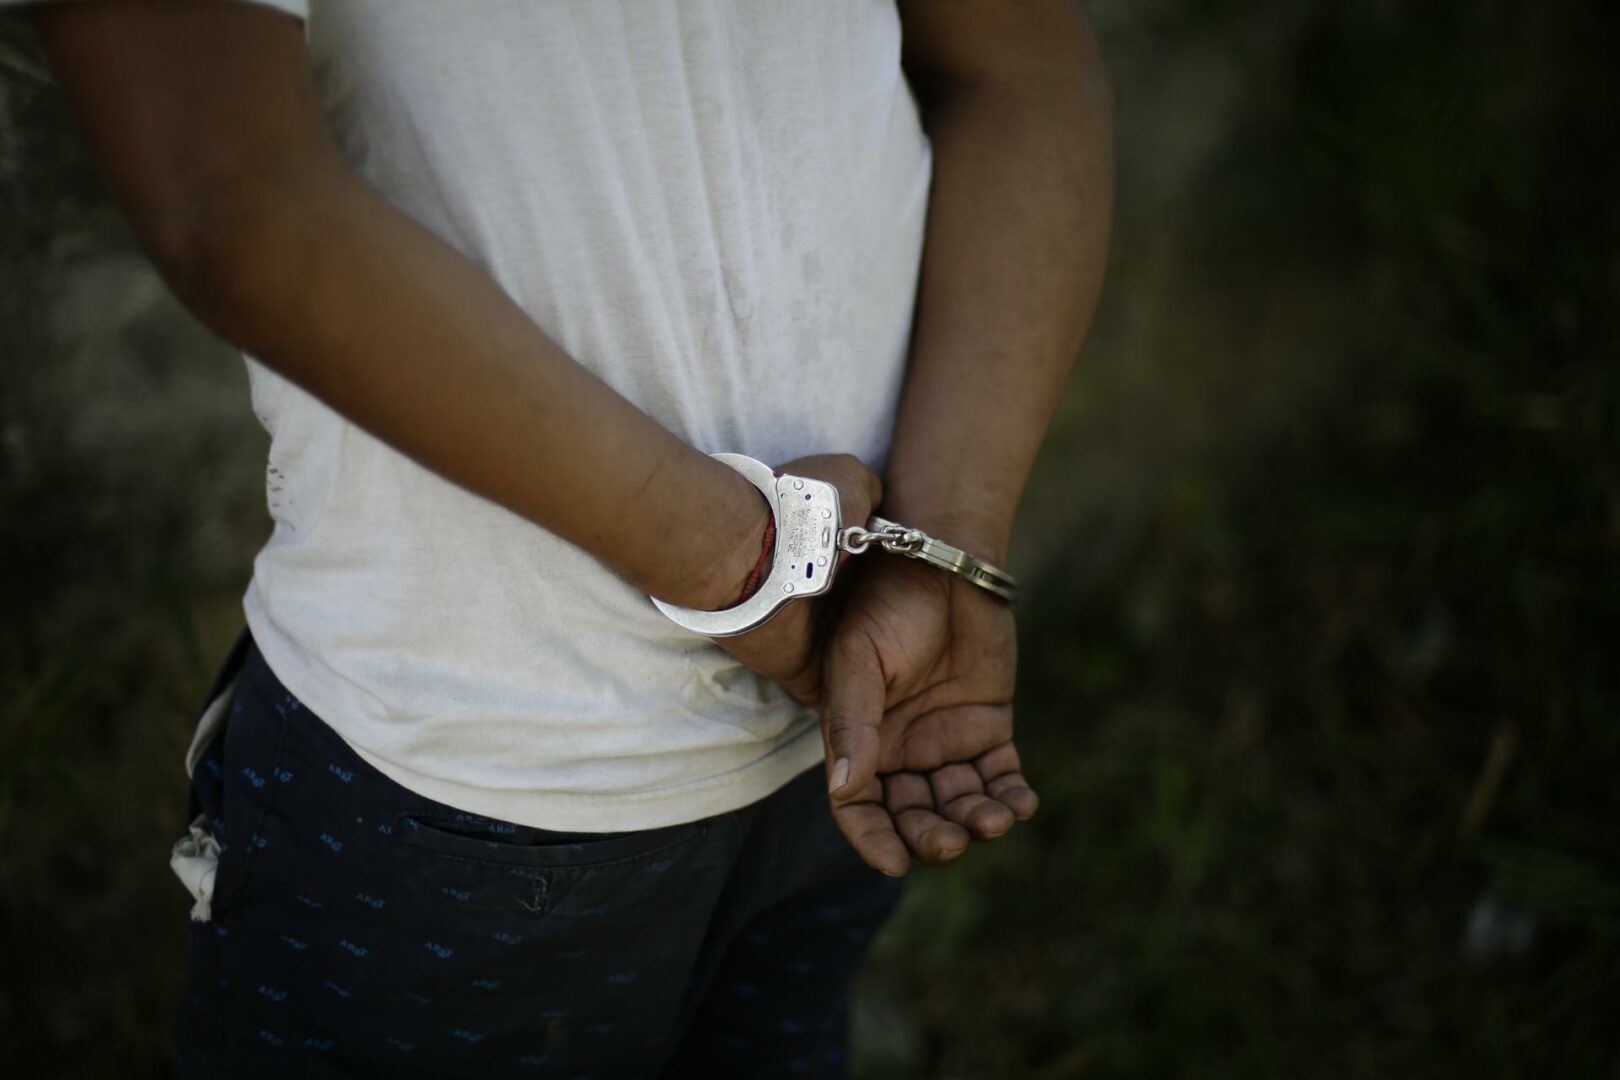 Condenan a 24 años de cárcel a puertorriqueño por explotación sexual infantil